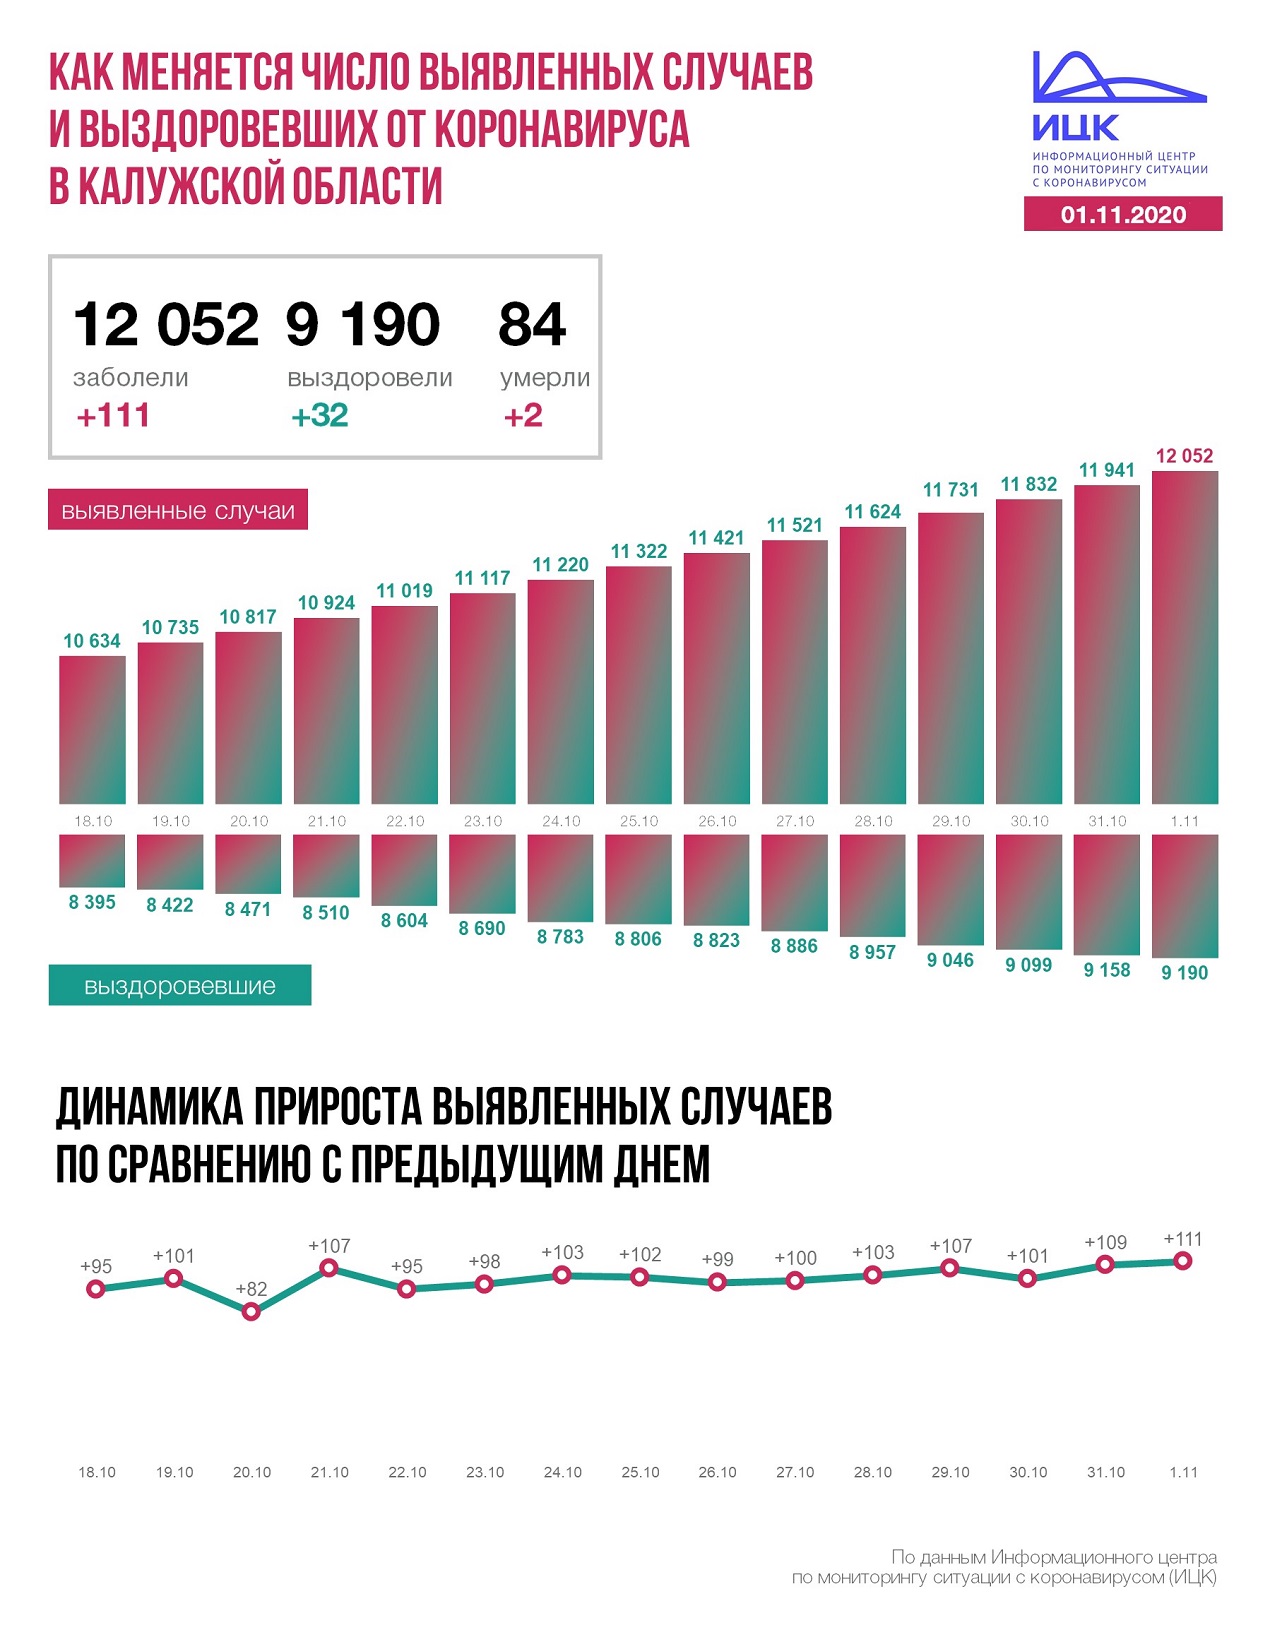 Официальные данные федерального оперативного штаба по коронавирусу в Калужской области на 1 ноября 2020 года.